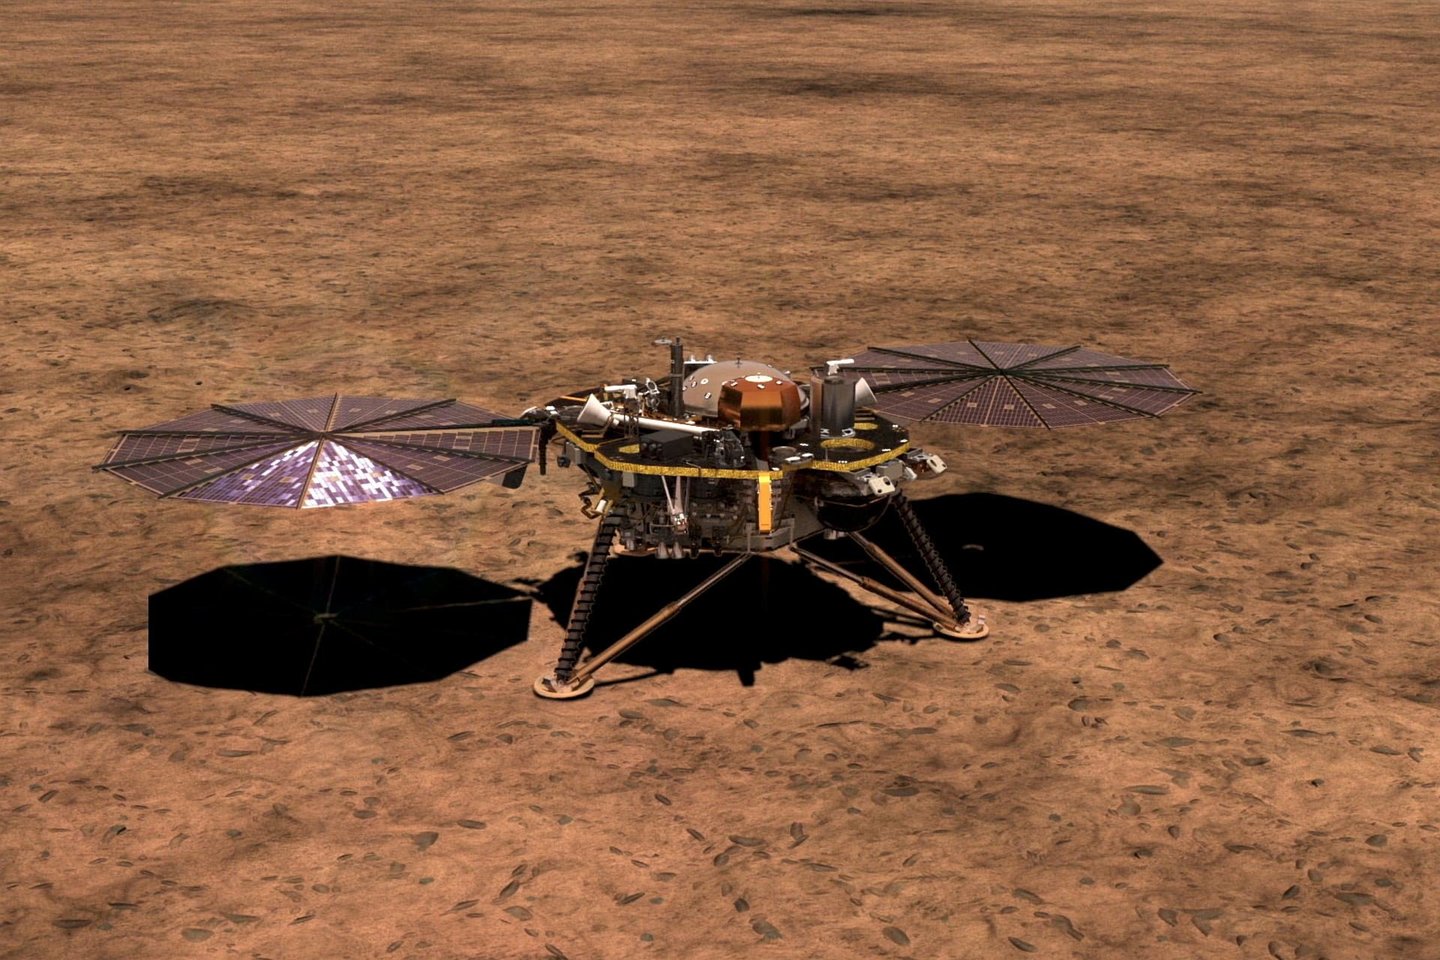  Pagrindinė „InSight“ užduotis – ištirti Marso vidinę sandarą ir ten vykstančius procesus, tokius kaip drebėjimai, šilumos pernaša iš gelmių į paviršių ir t.t.<br> Reuters / Scanpix iliustr.